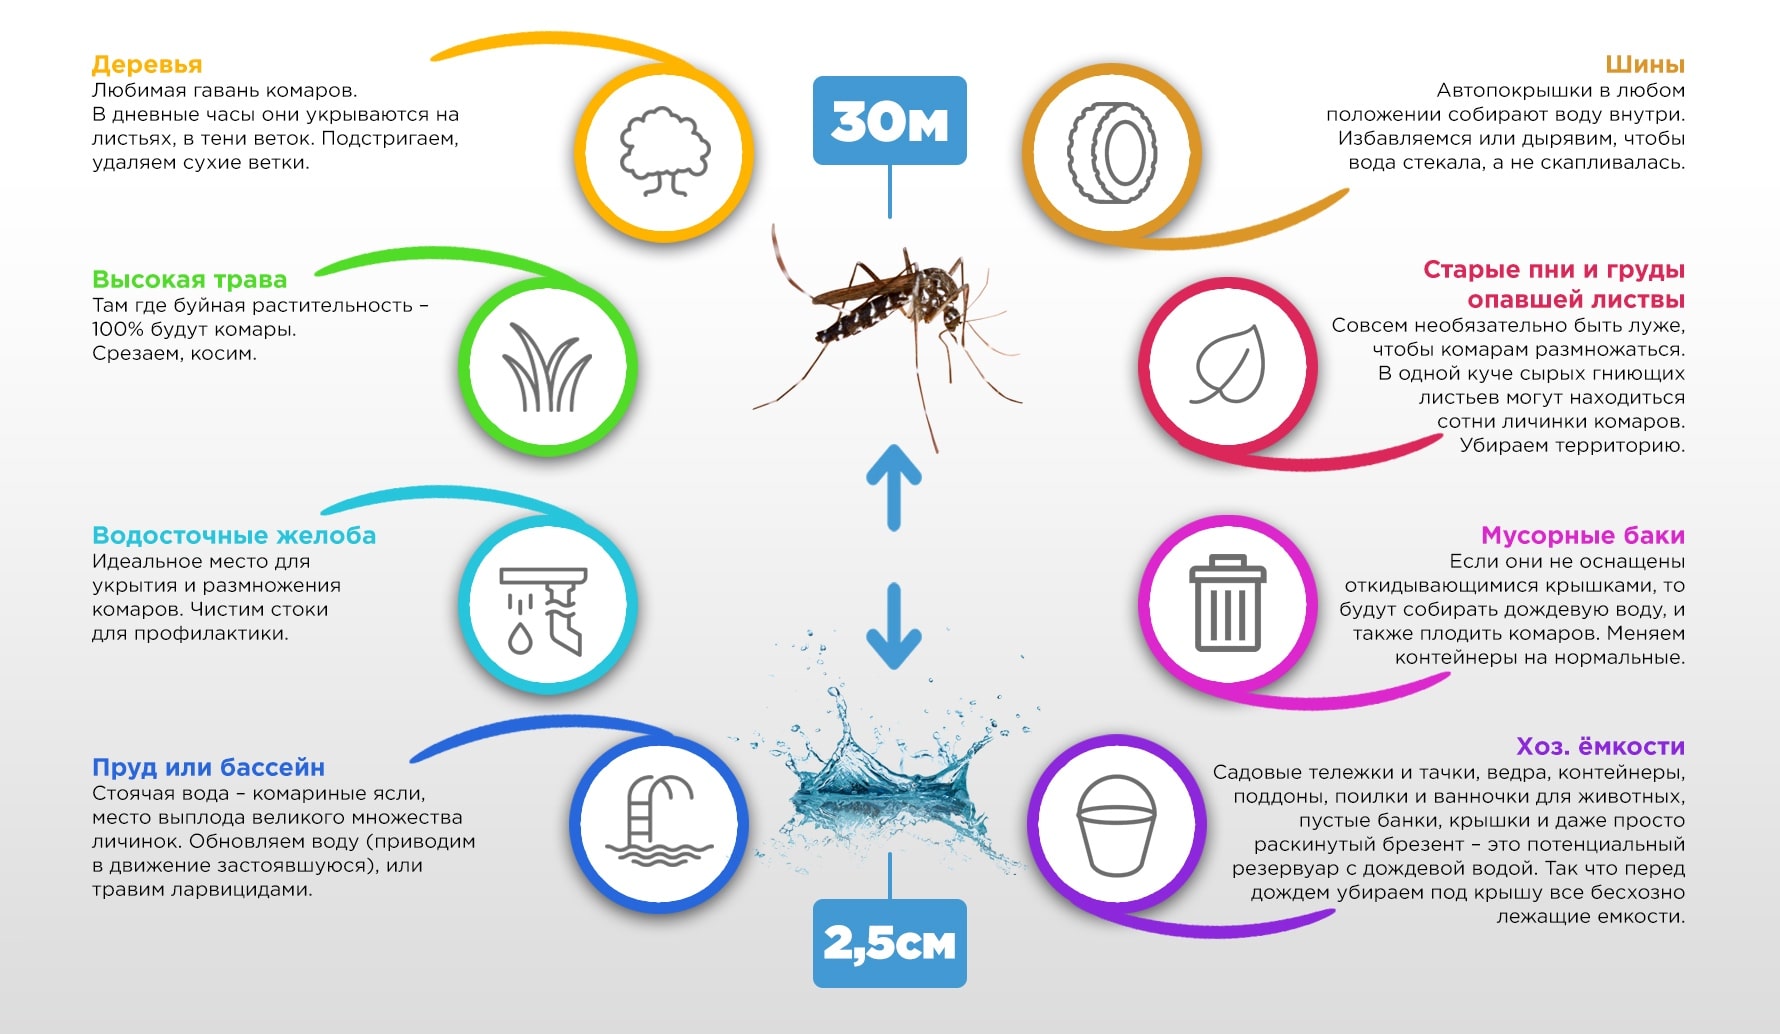 Жизненный цикл комара дергунеца и средства защиты (химические и механические)